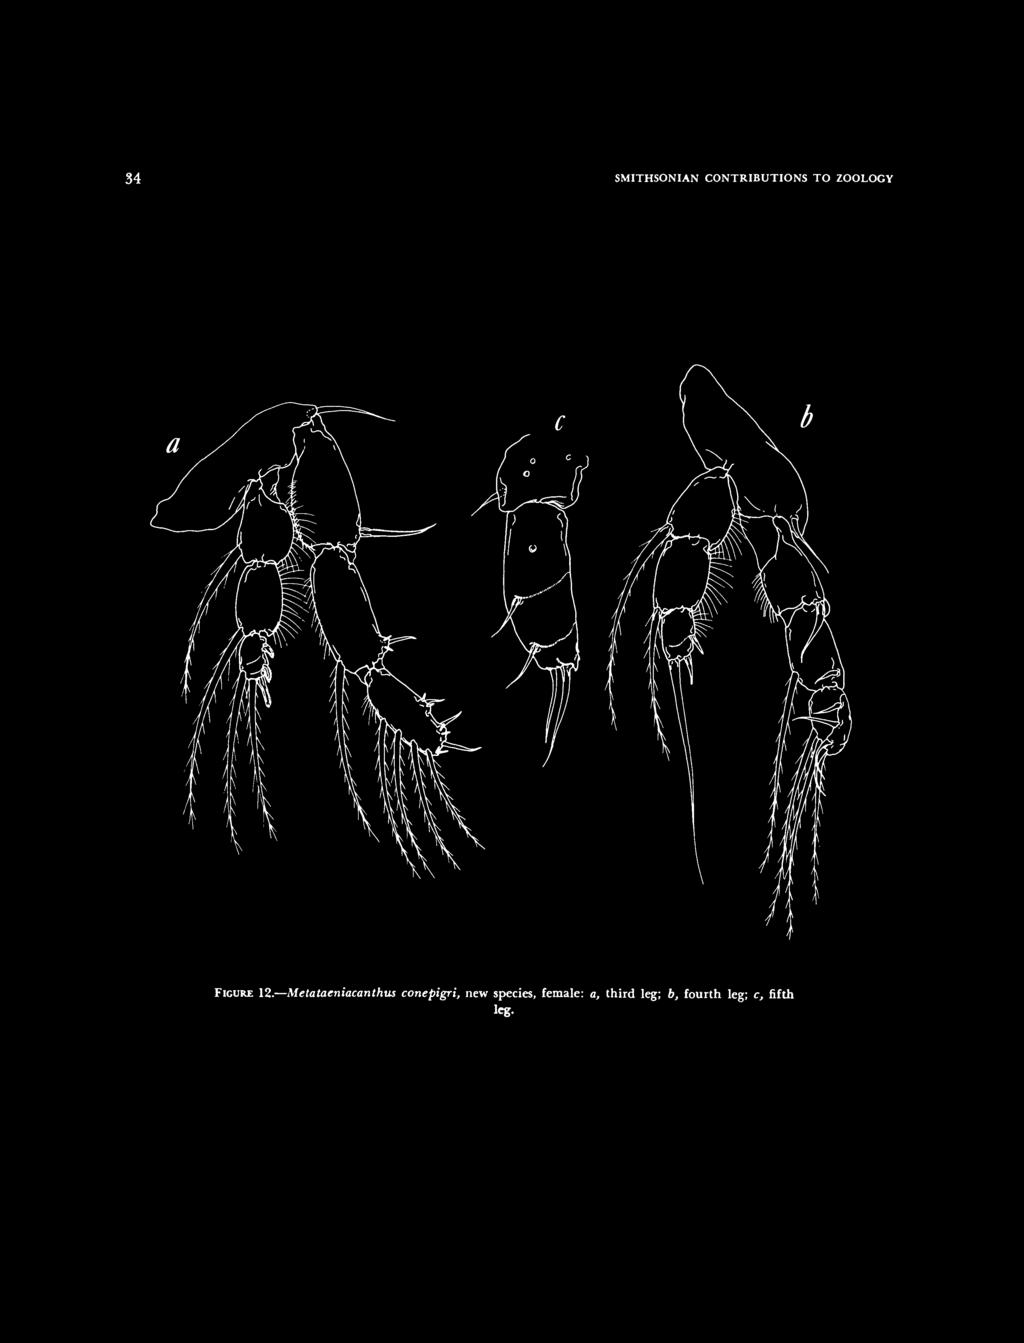 Metataeniacanthus conepigri, new